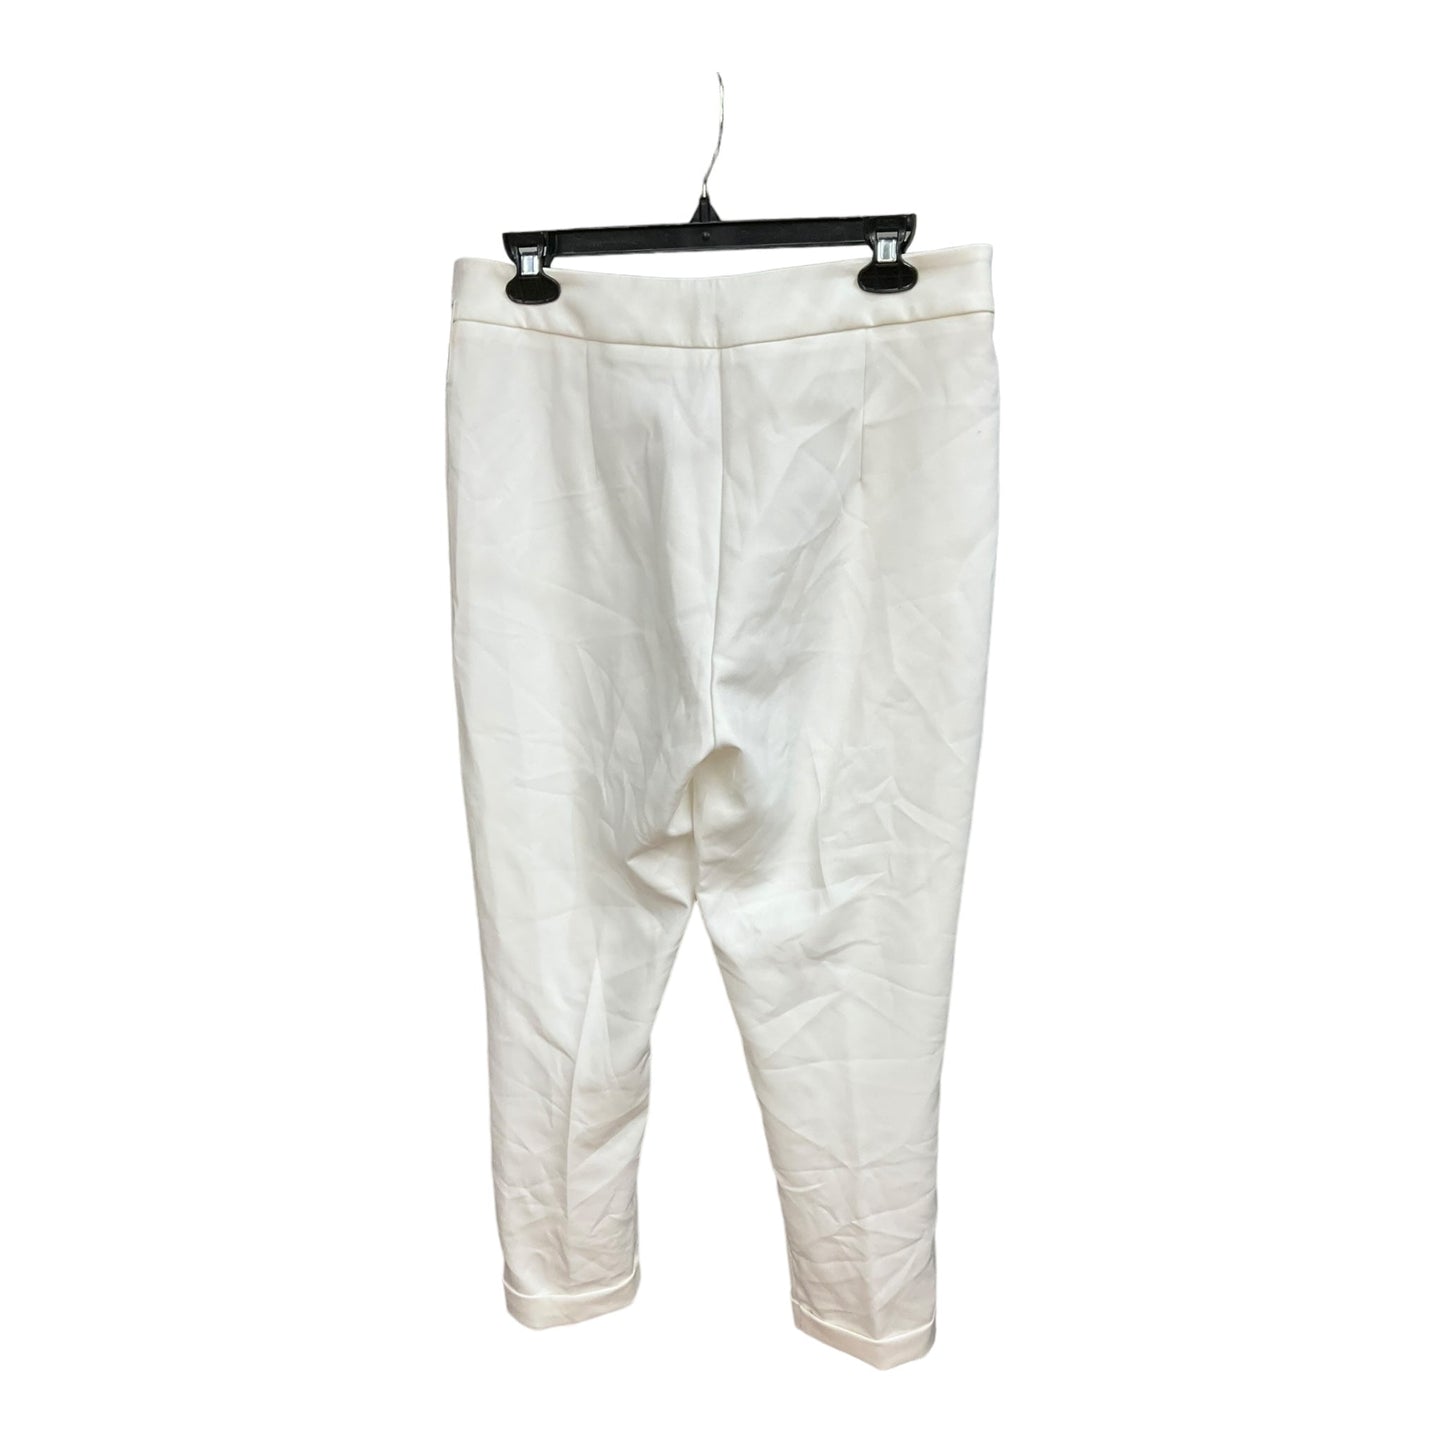 White Pants Dress Bebe, Size 10